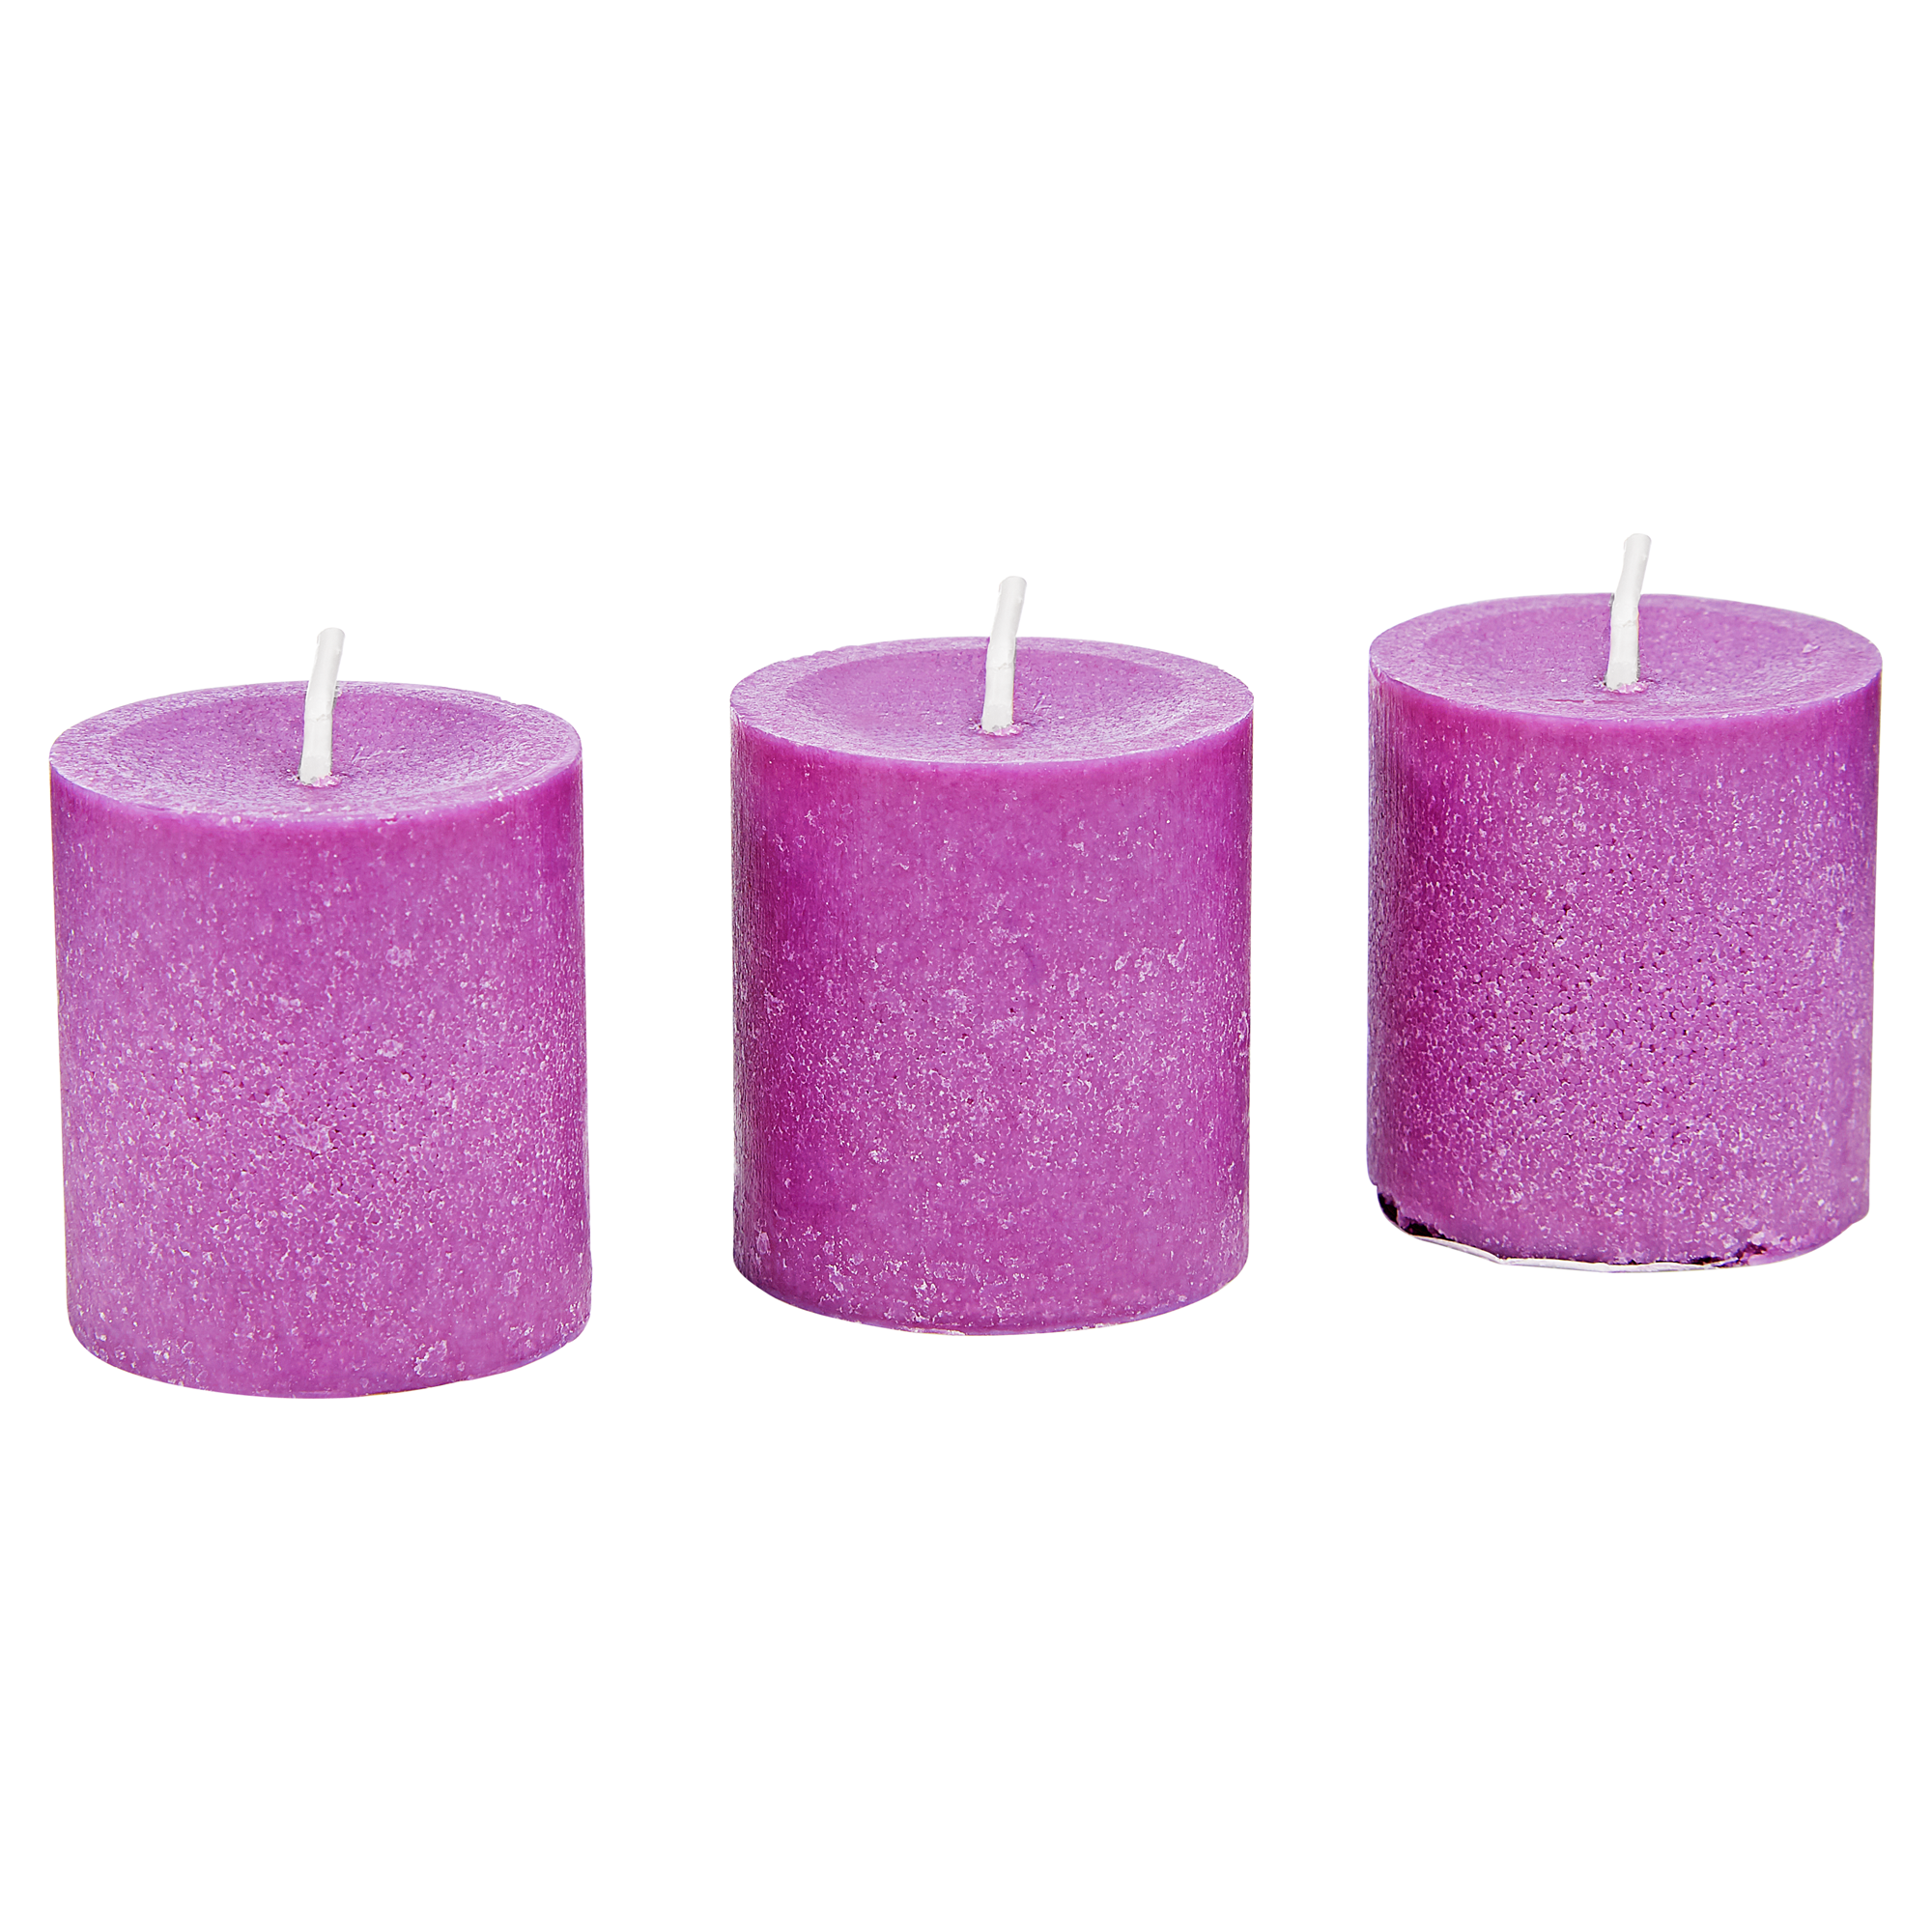 Duft-Votivkerzen "Lavender Dream" 3 Stück + product picture